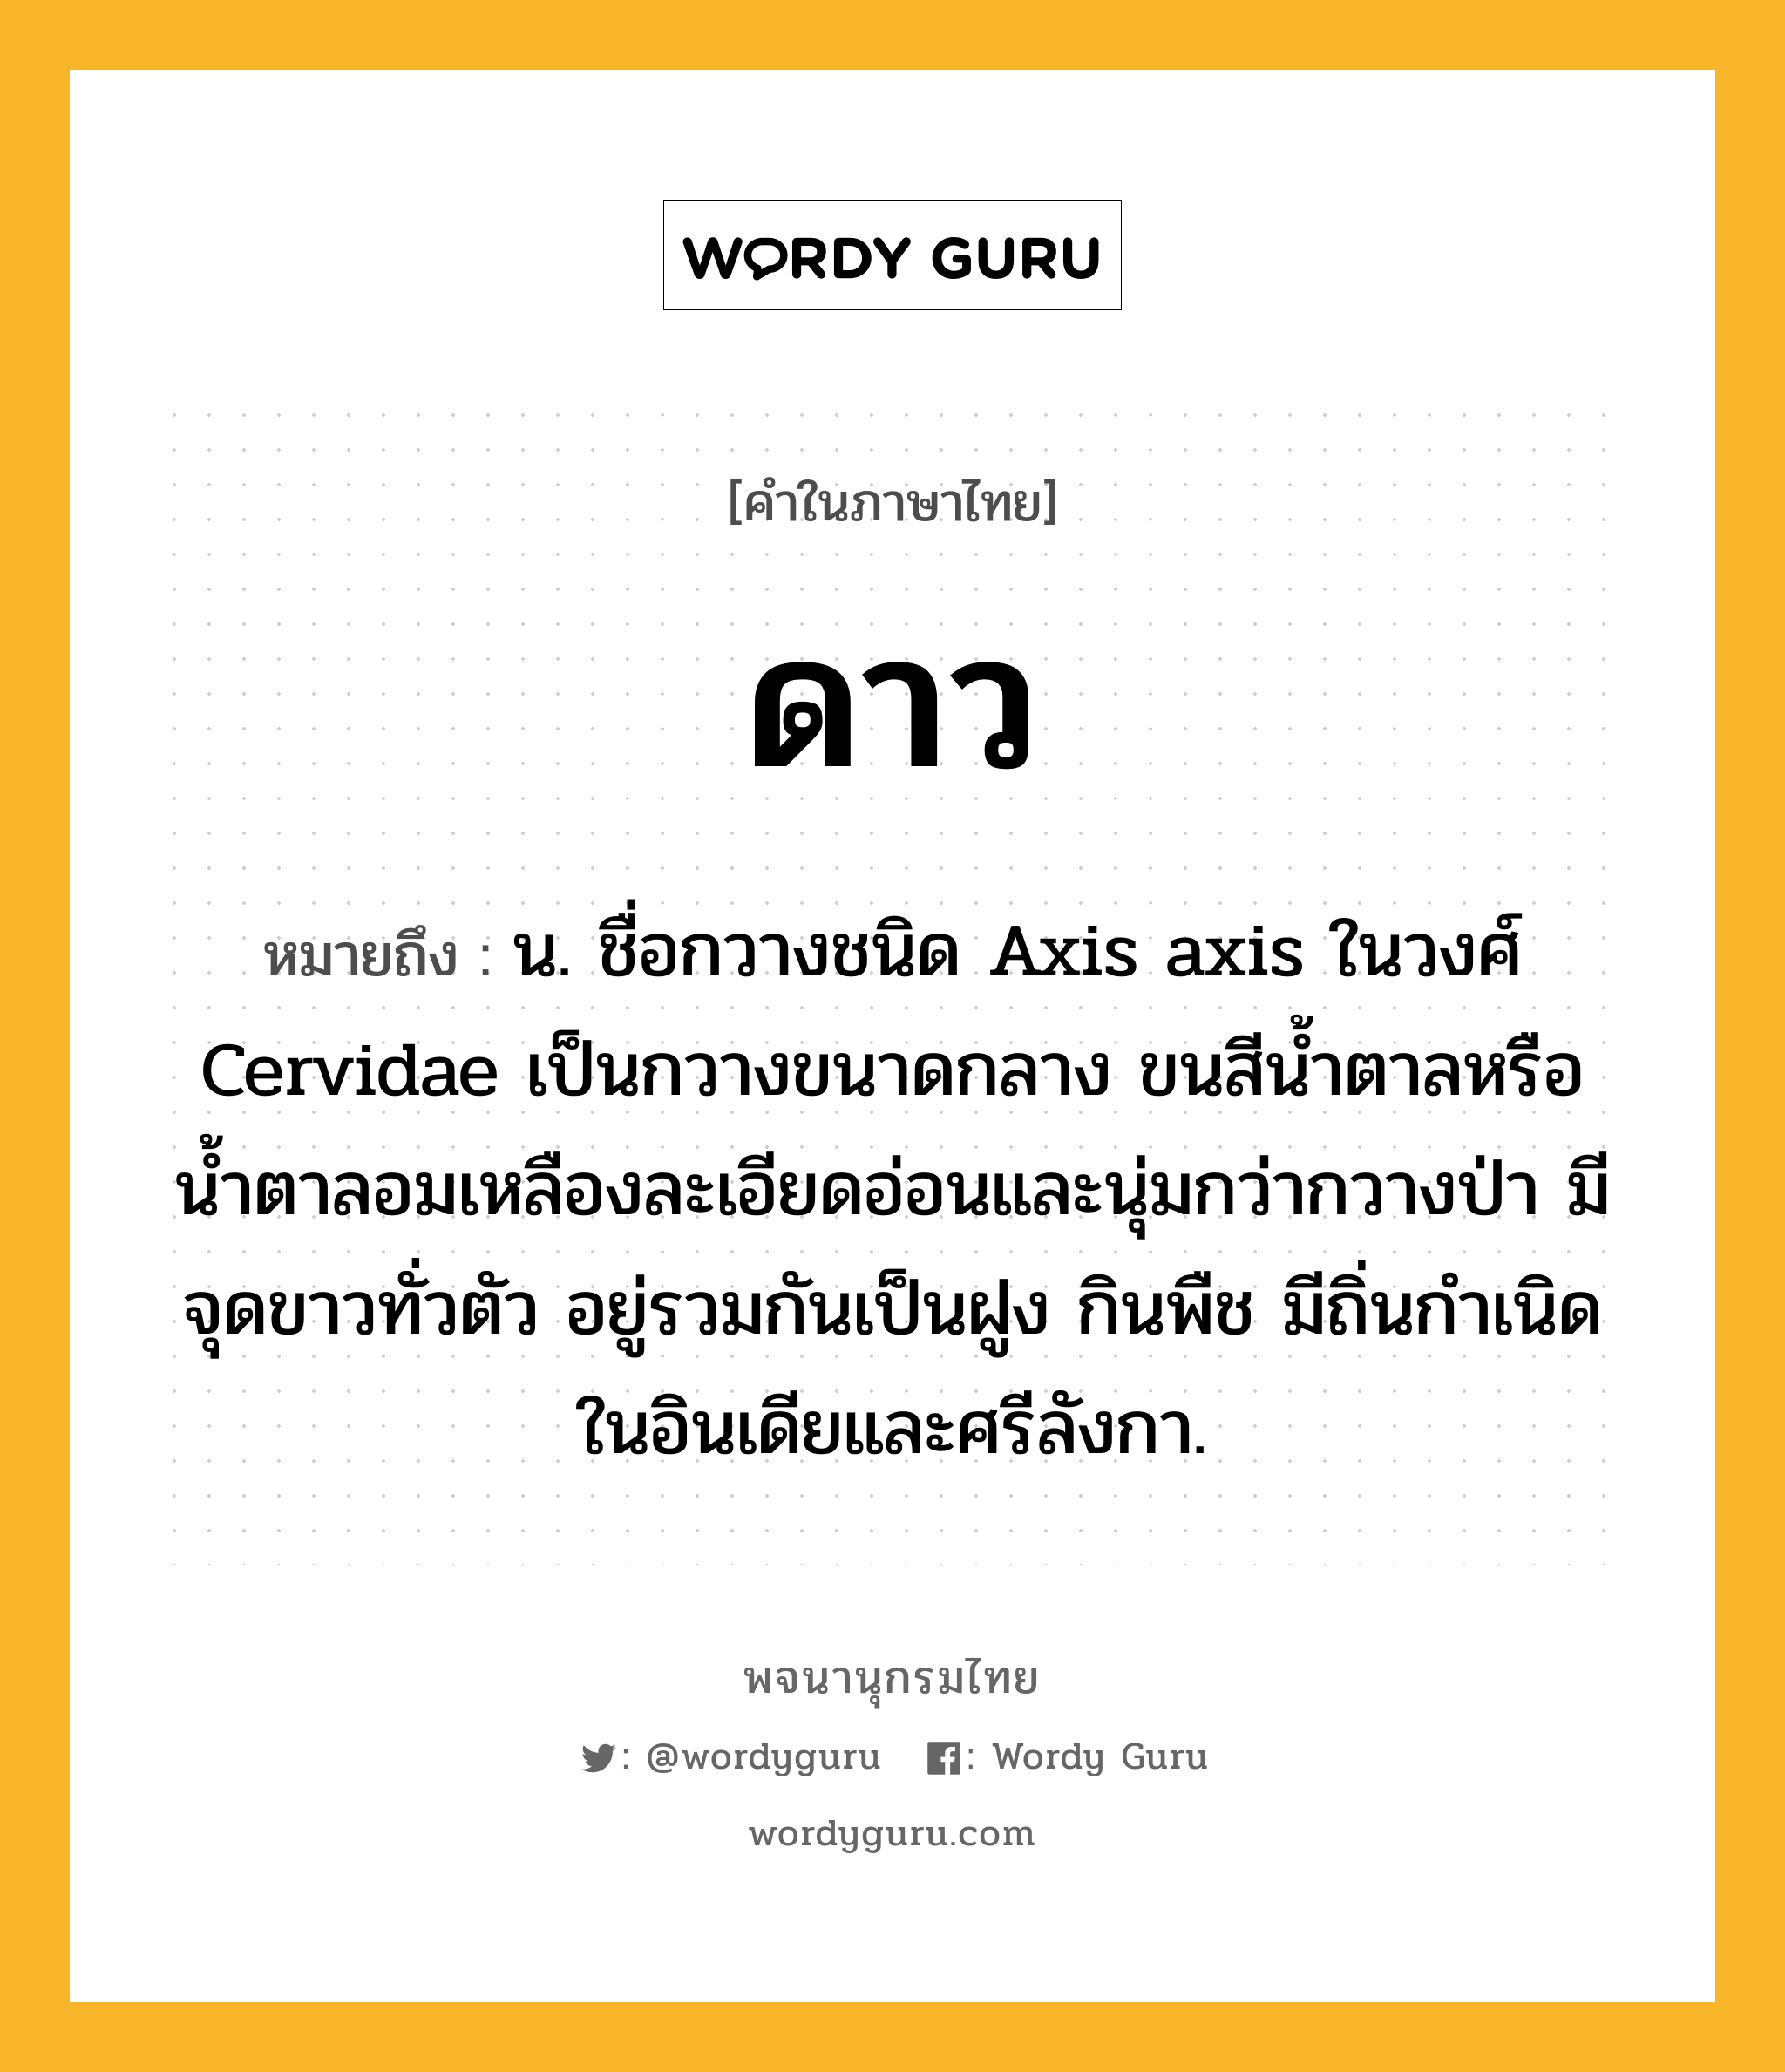 ดาว ความหมาย หมายถึงอะไร?, คำในภาษาไทย ดาว หมายถึง น. ชื่อกวางชนิด Axis axis ในวงศ์ Cervidae เป็นกวางขนาดกลาง ขนสีนํ้าตาลหรือน้ำตาลอมเหลืองละเอียดอ่อนและนุ่มกว่ากวางป่า มีจุดขาวทั่วตัว อยู่รวมกันเป็นฝูง กินพืช มีถิ่นกําเนิดในอินเดียและศรีลังกา.